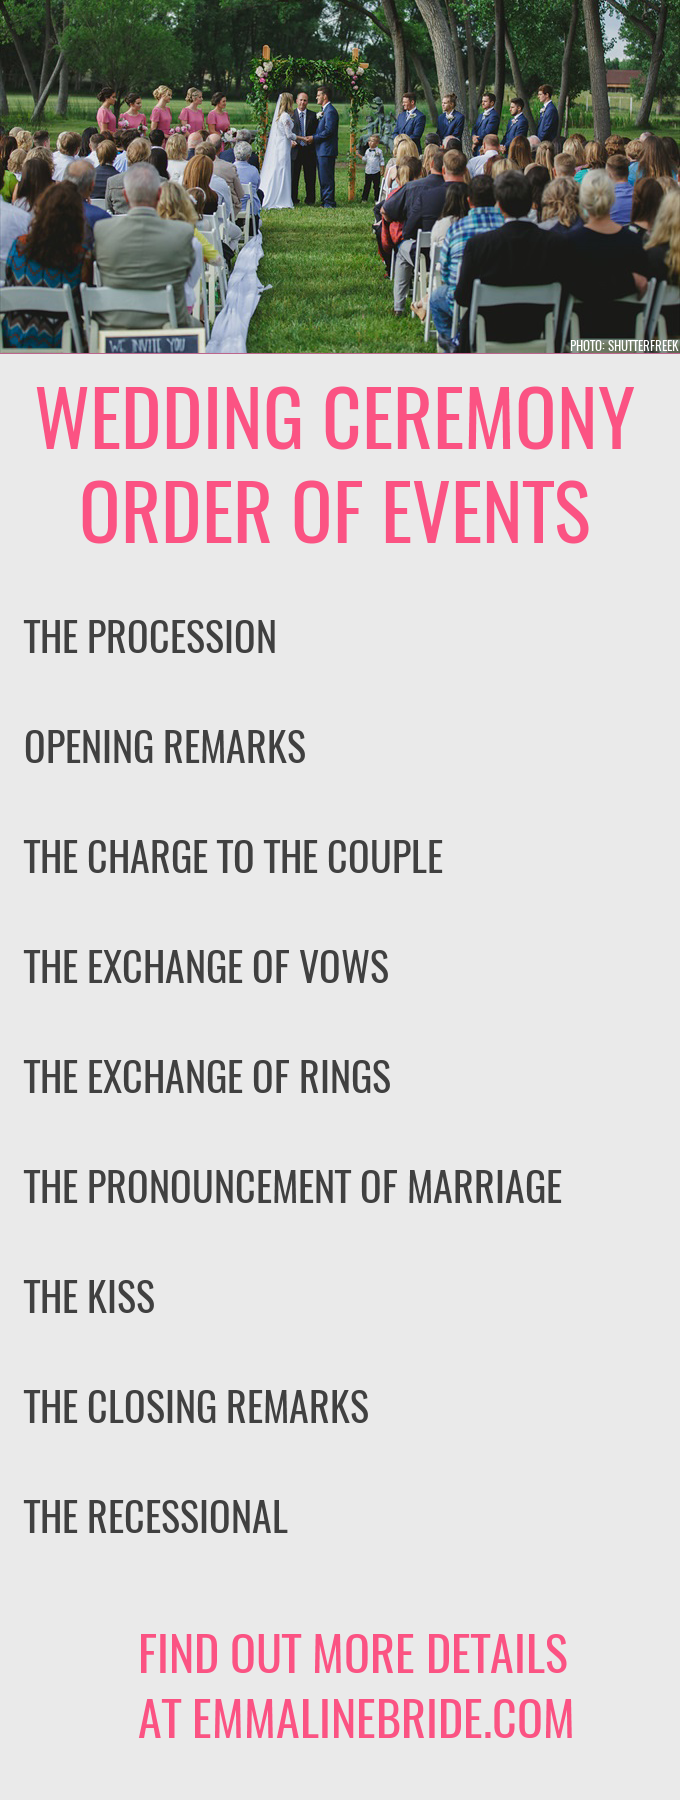 wedding ceremony order of events | https://emmalinebride.com/ceremony/order-events/